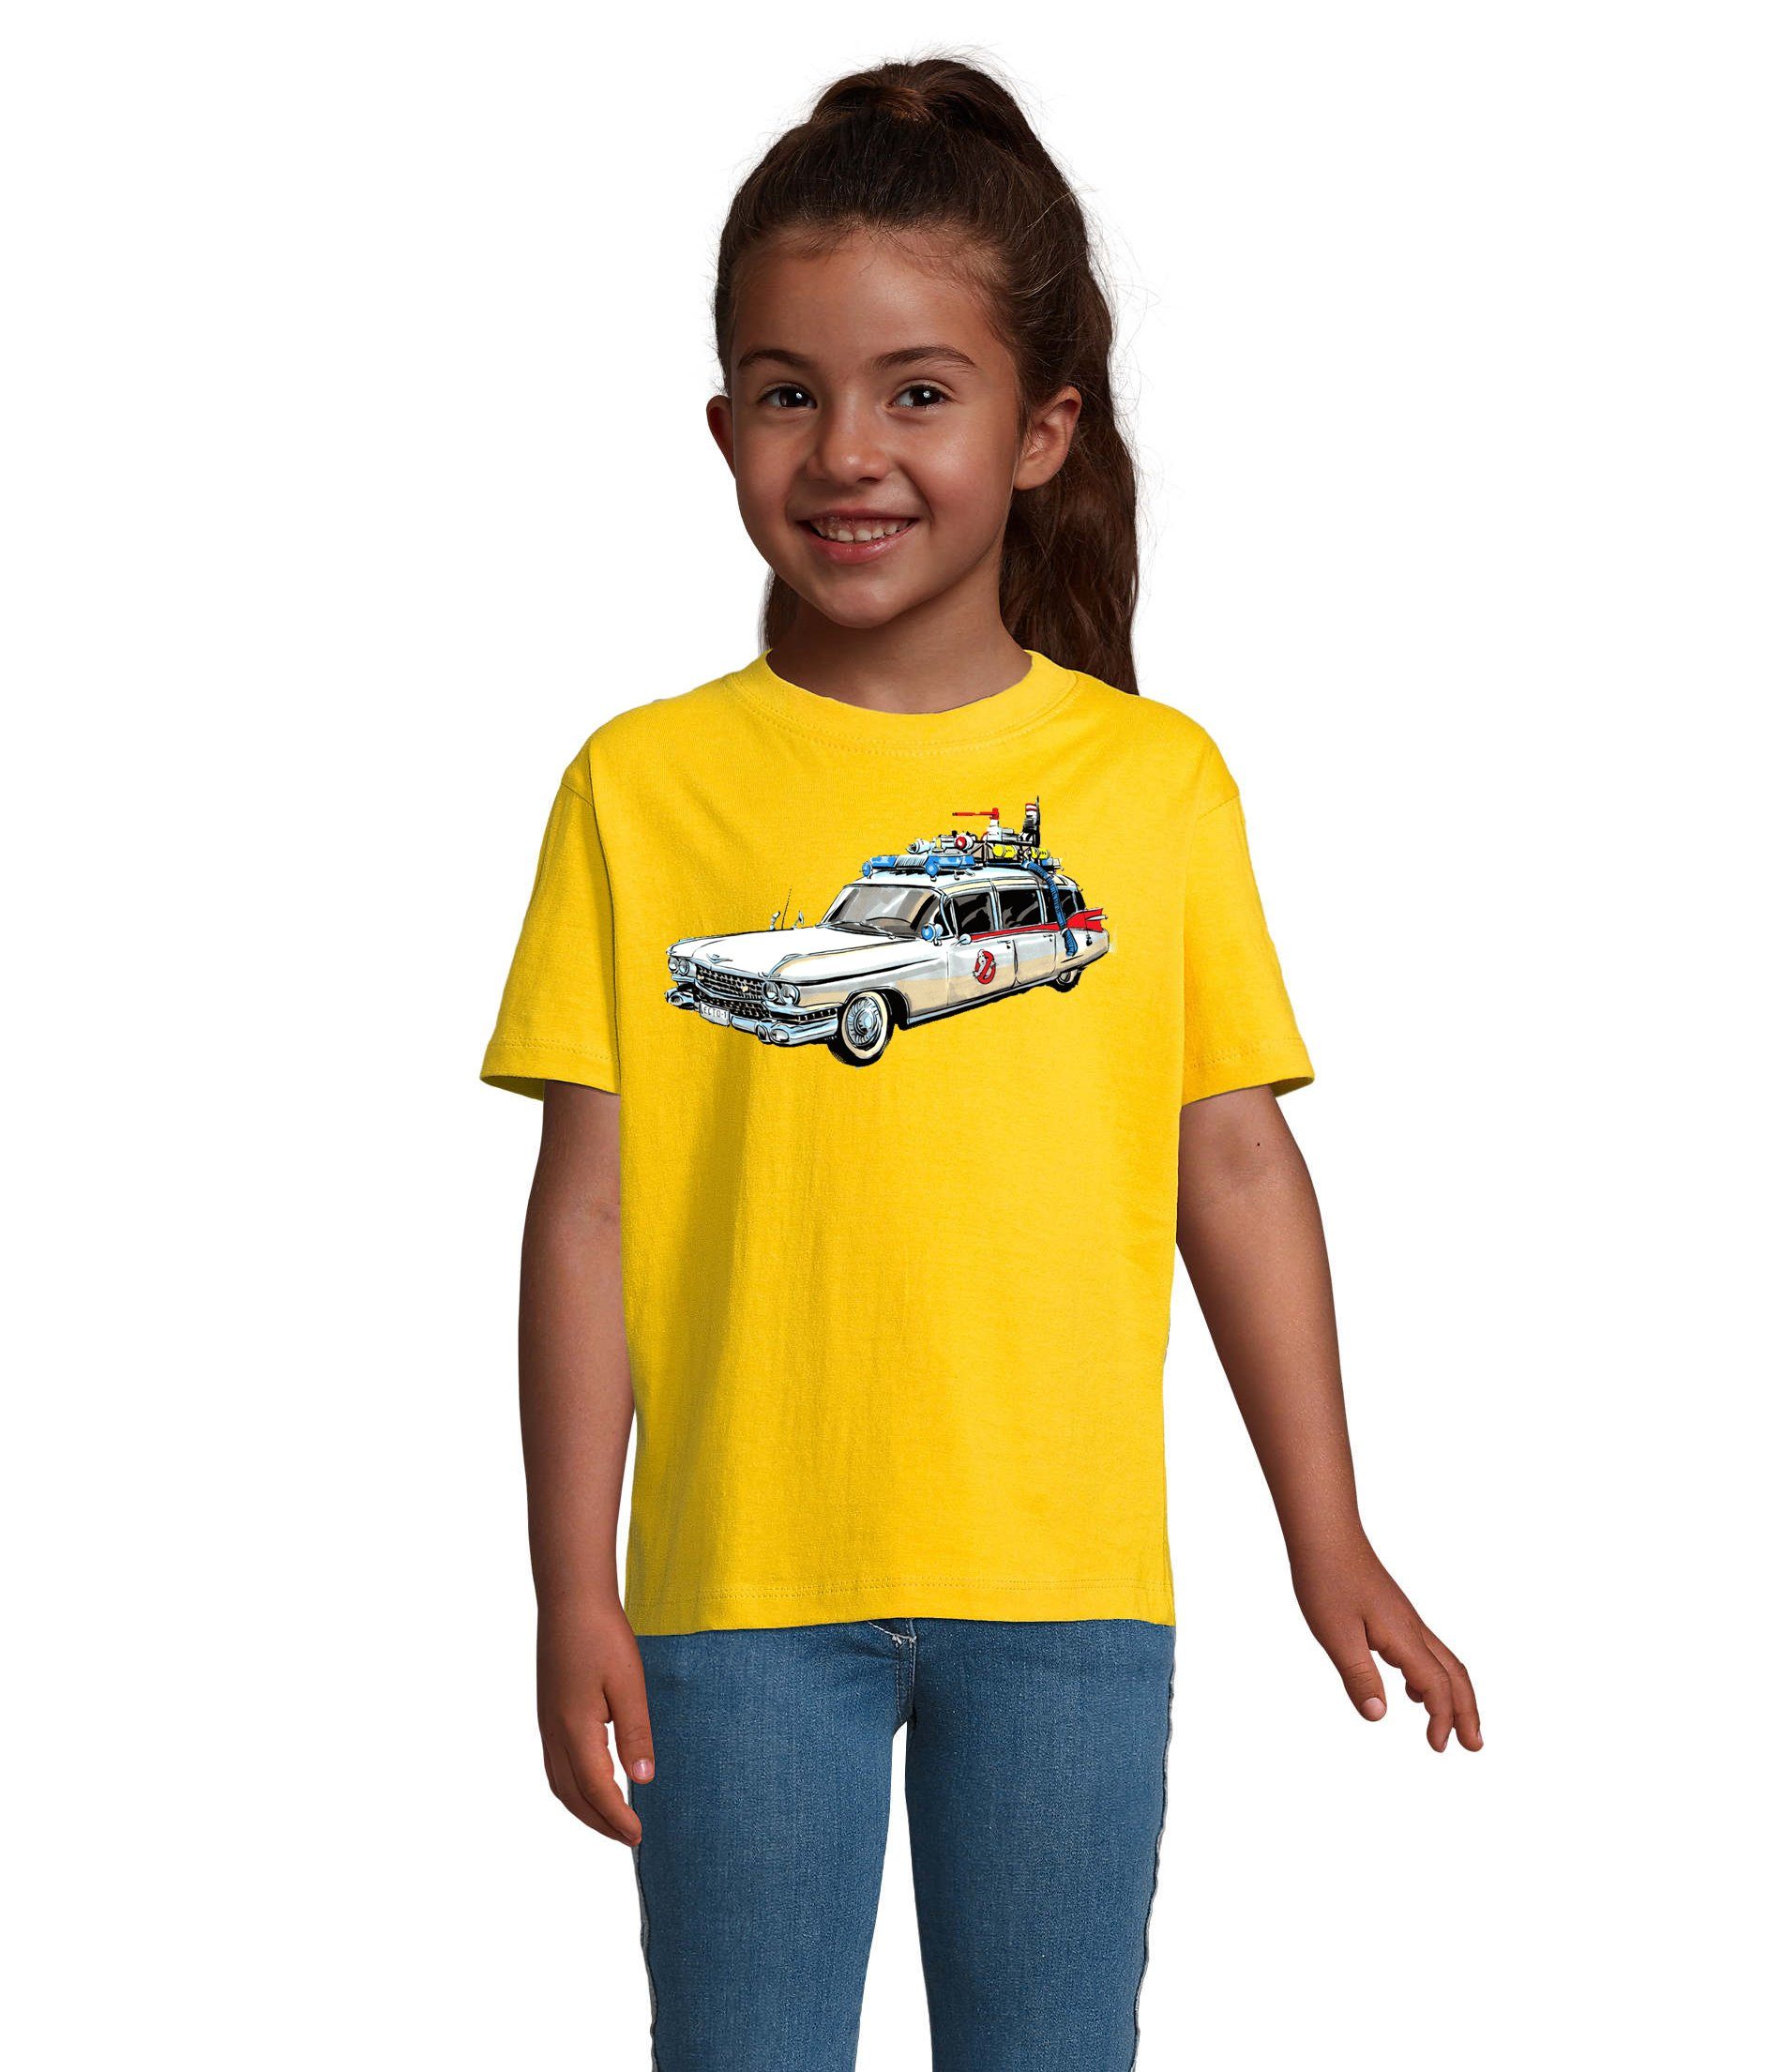 Blondie & Brownie T-Shirt Kinder Jungen & Mädchen Ghostbusters Auto Geisterjäger Geister Film in vielen Farben Gelb